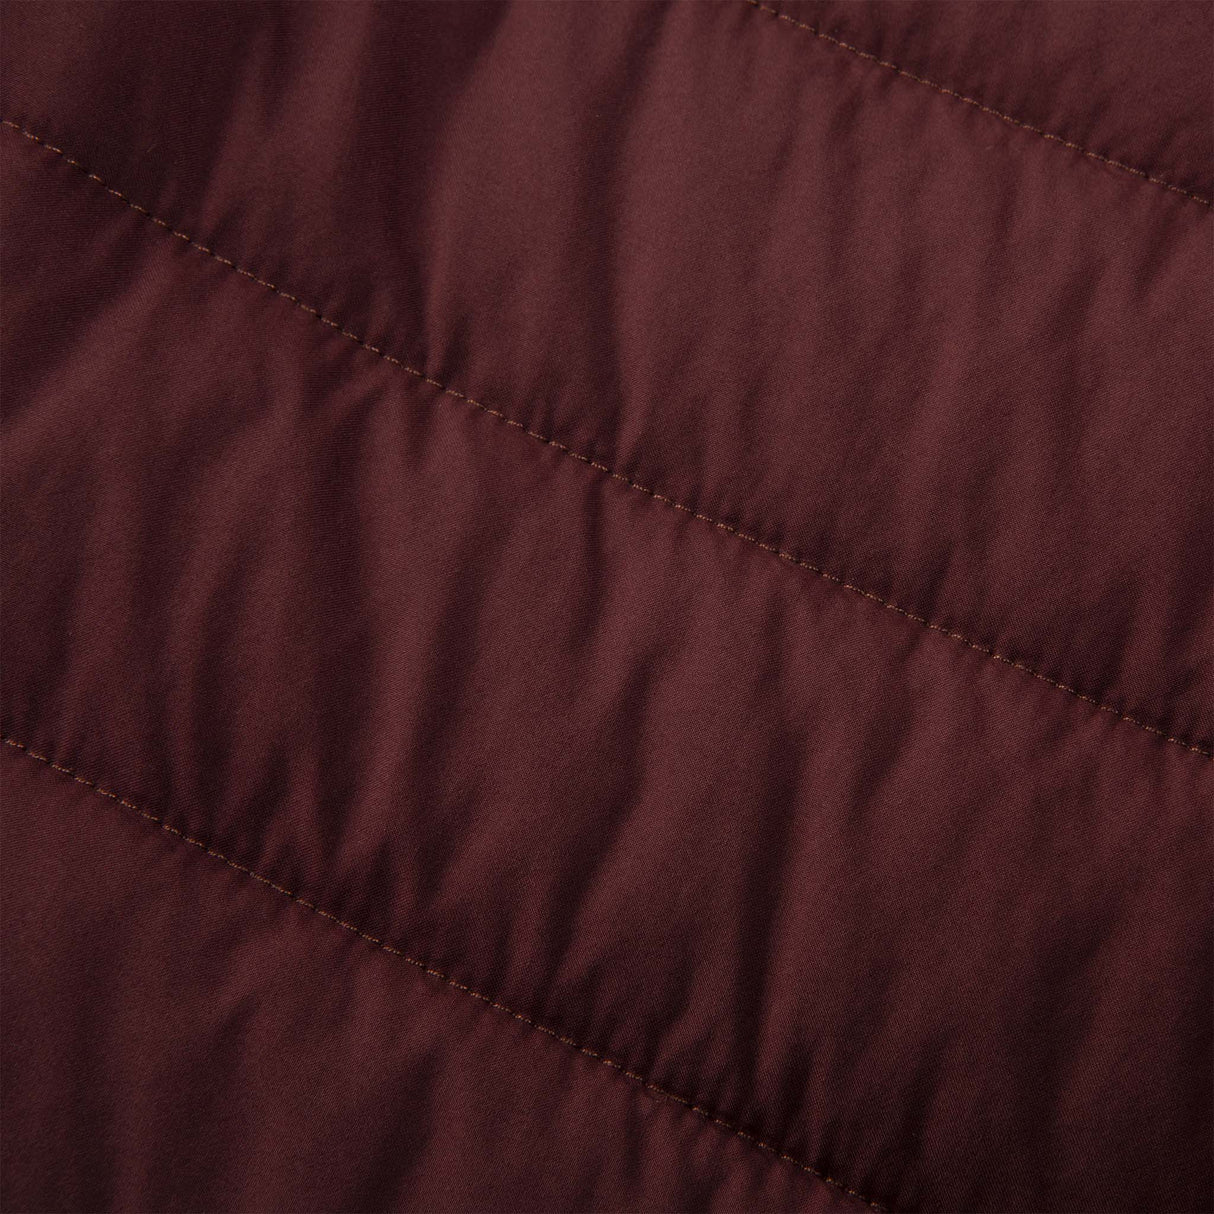 Brooks Shield Hybrid Jacket 2.0 manteau de course à pied run raisin copper femme detail textile